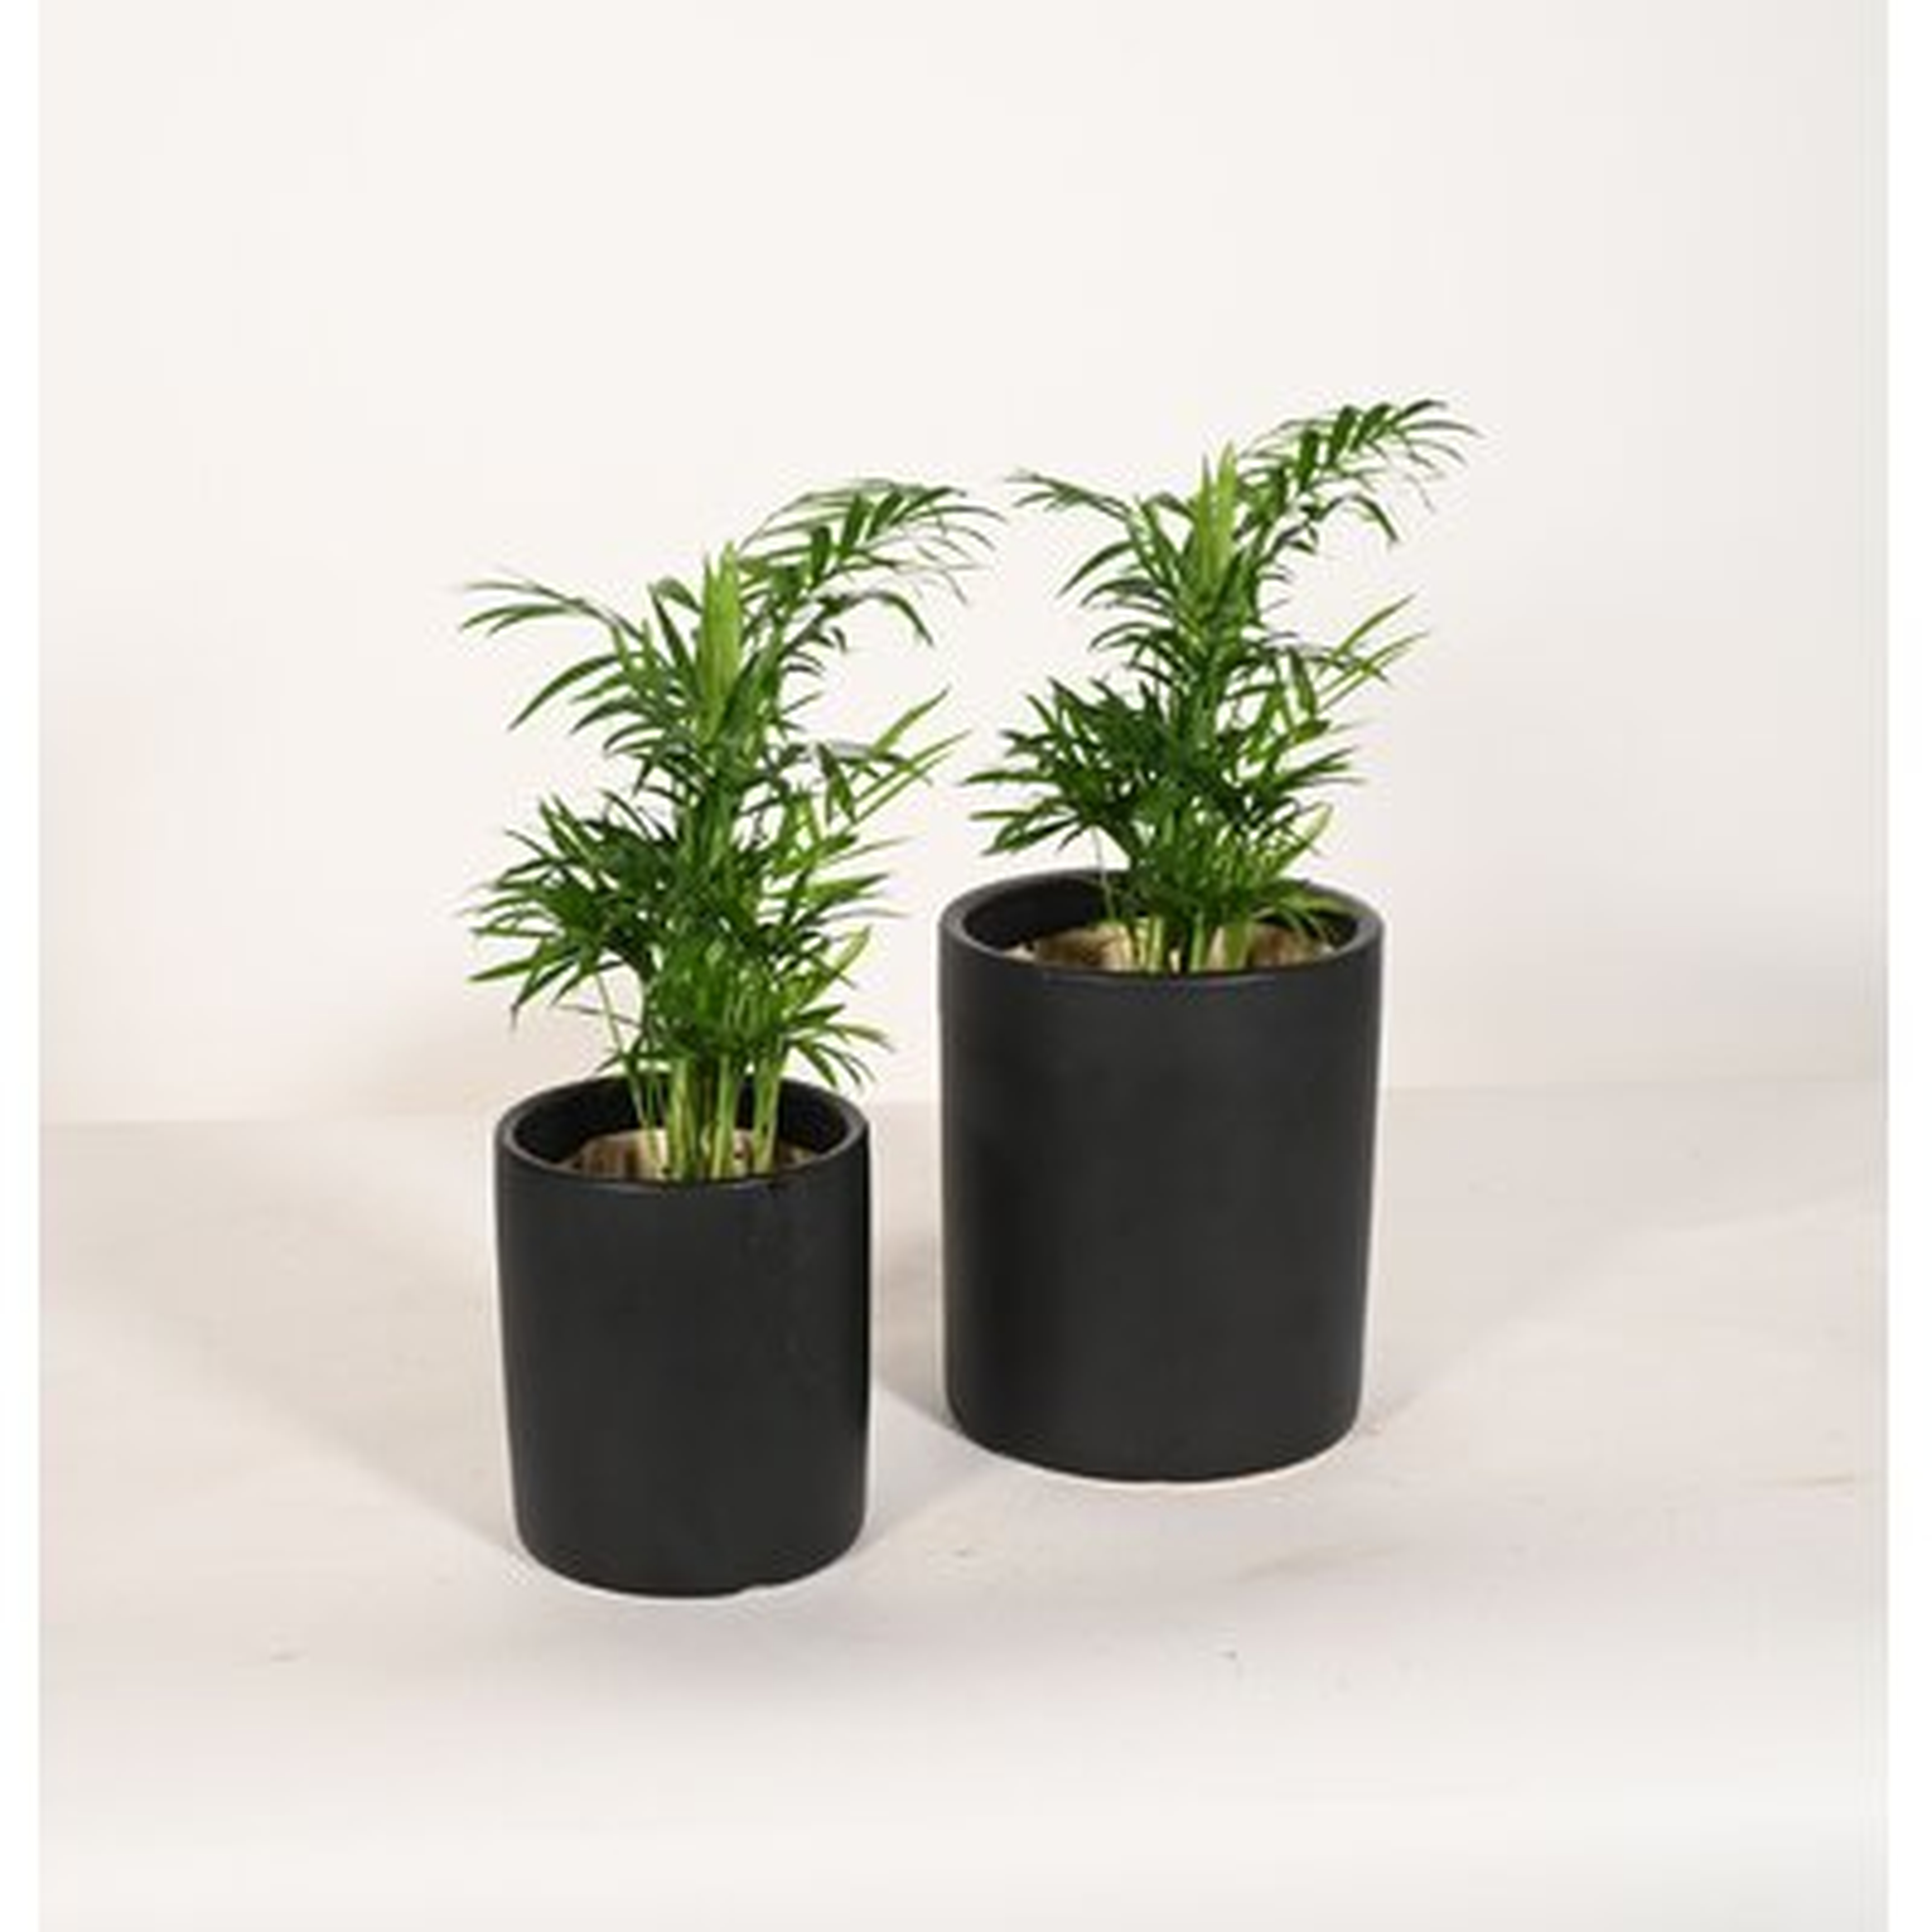 Live Plant Parlor Palm With Ceramic Planter Pots 5'' Sky Blue/6'' White - Wayfair